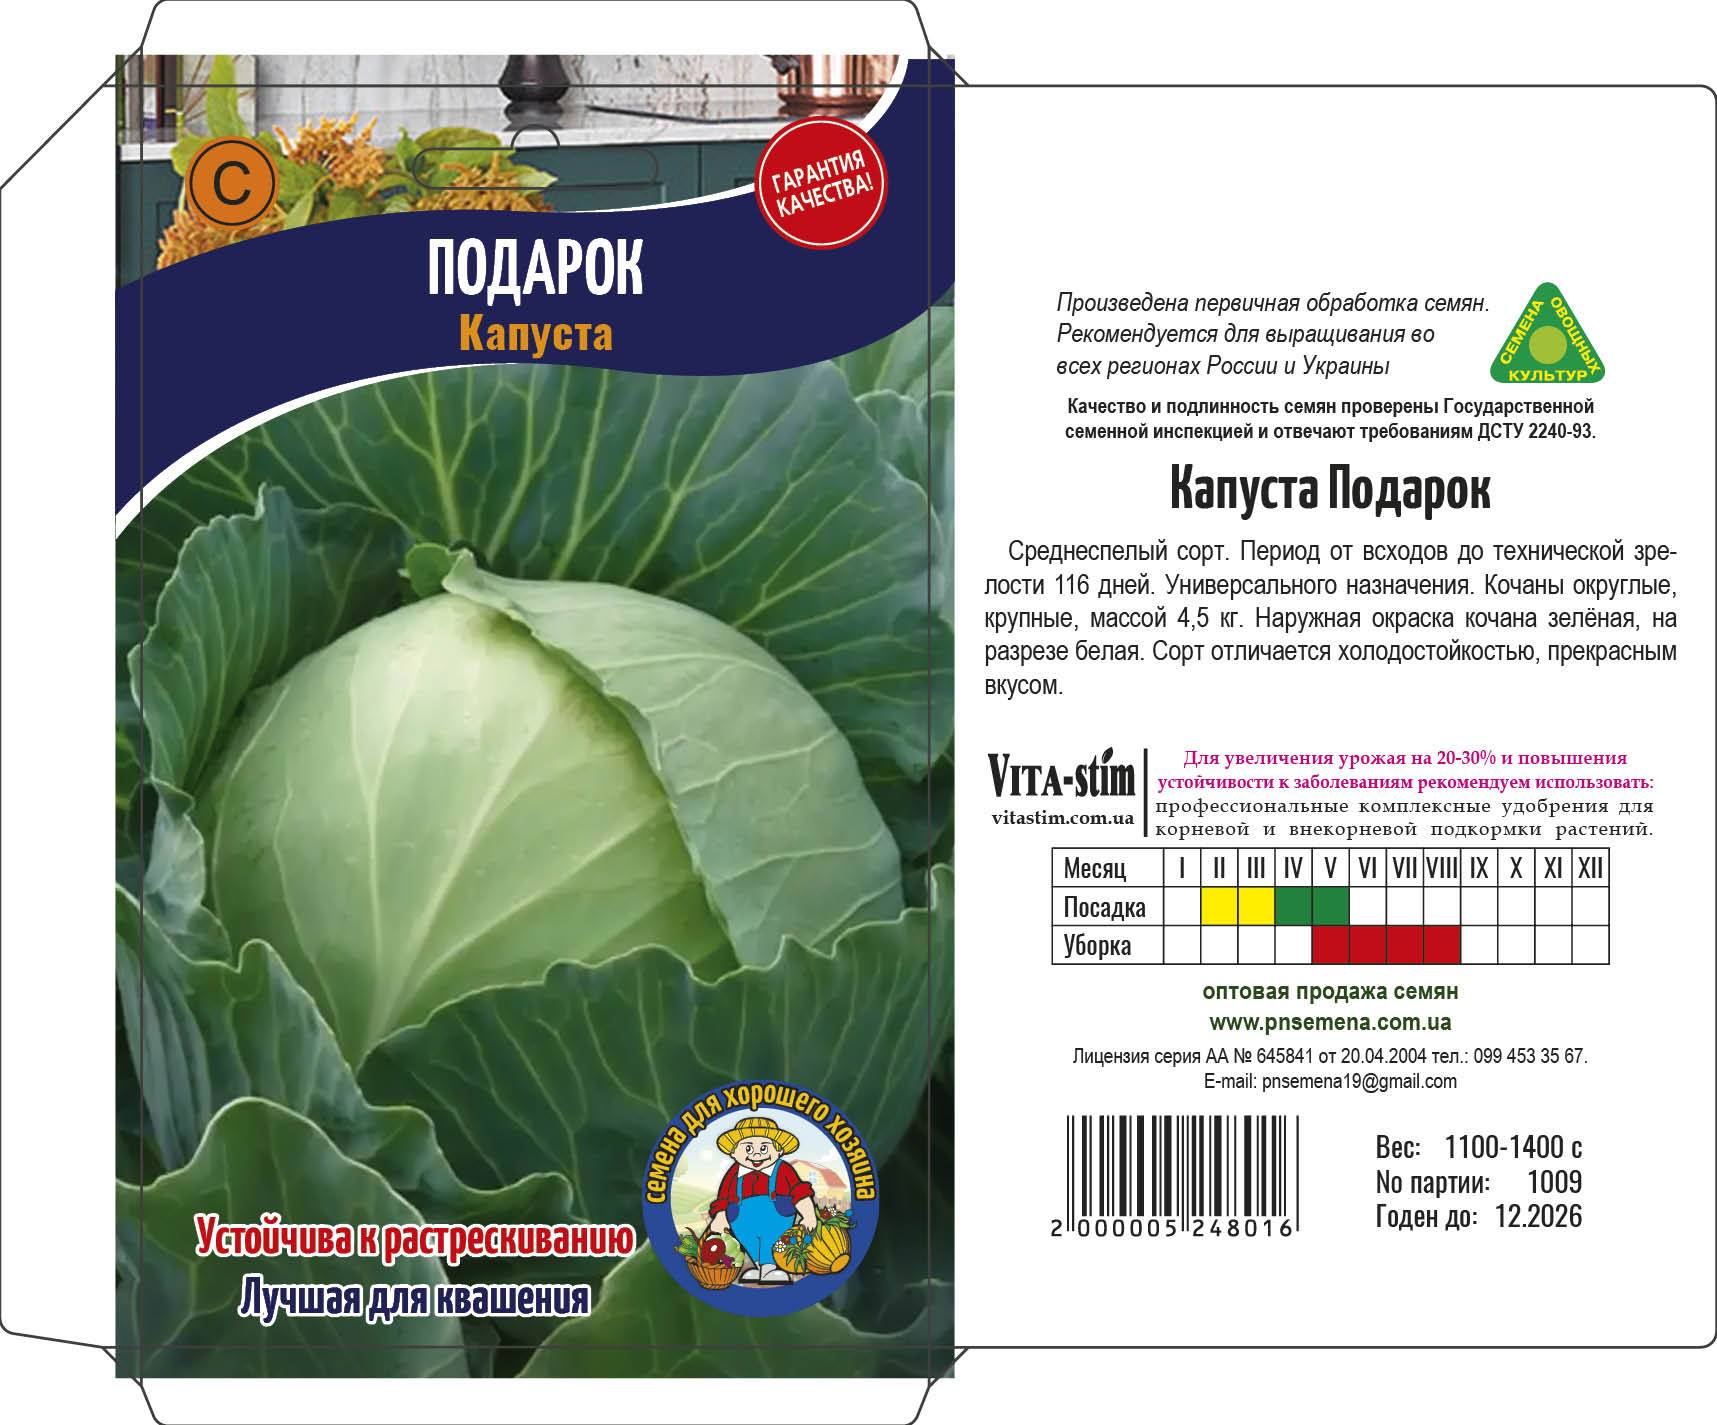 Капуста белорусская: описание сорта с фото, выращивание, отзывы тех, кто сажал